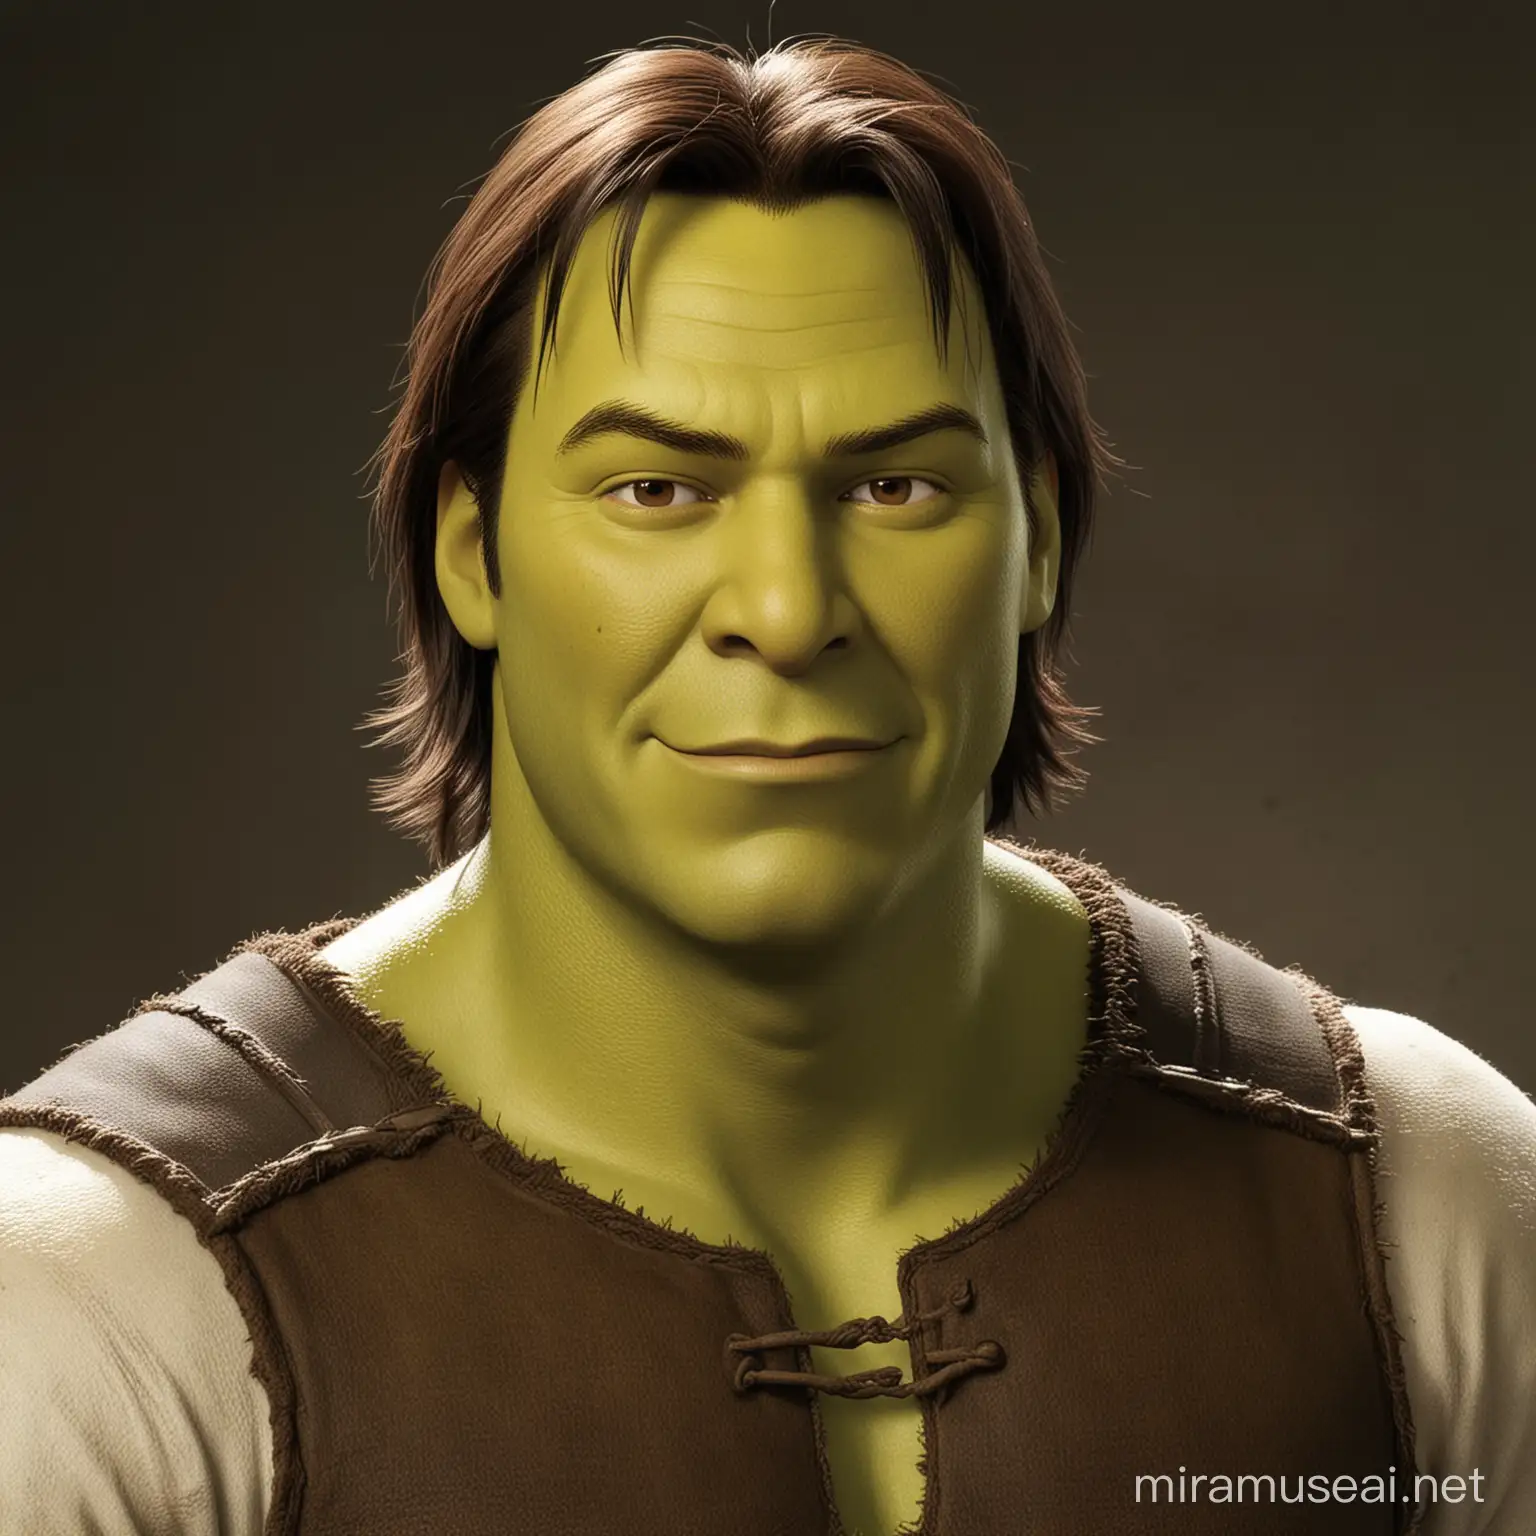 Keanu Reeves Portraying Shrek in a Cinematic Twist